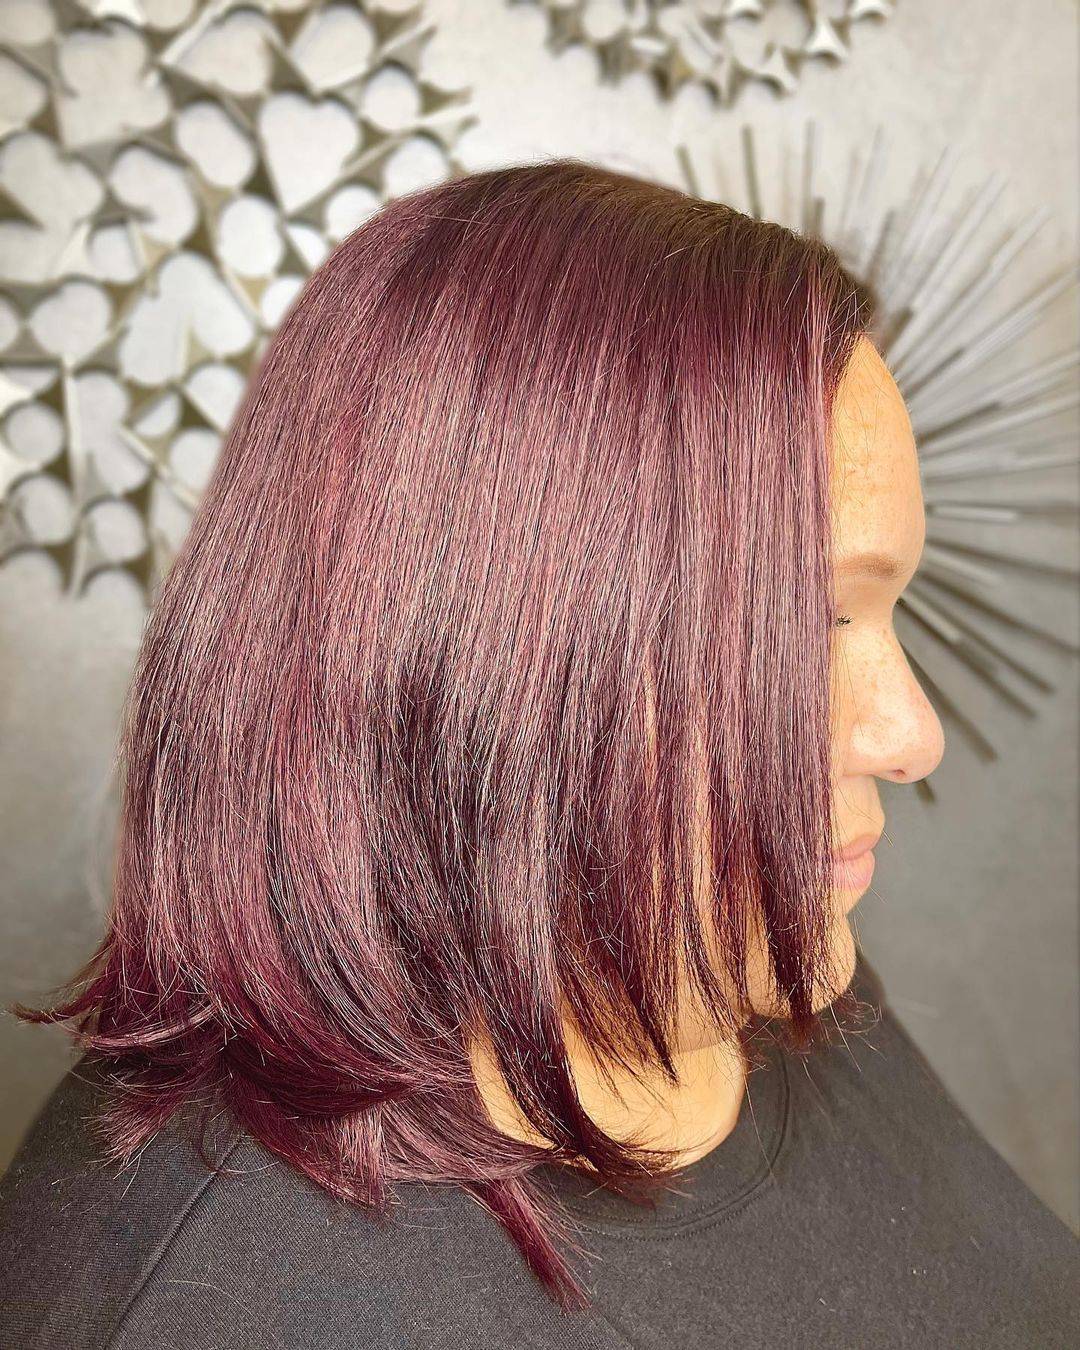 Burgundy hair color 443 burgundy hair color | burgundy hair color for women | burgundy hair color highlights Burgundy Hair Color